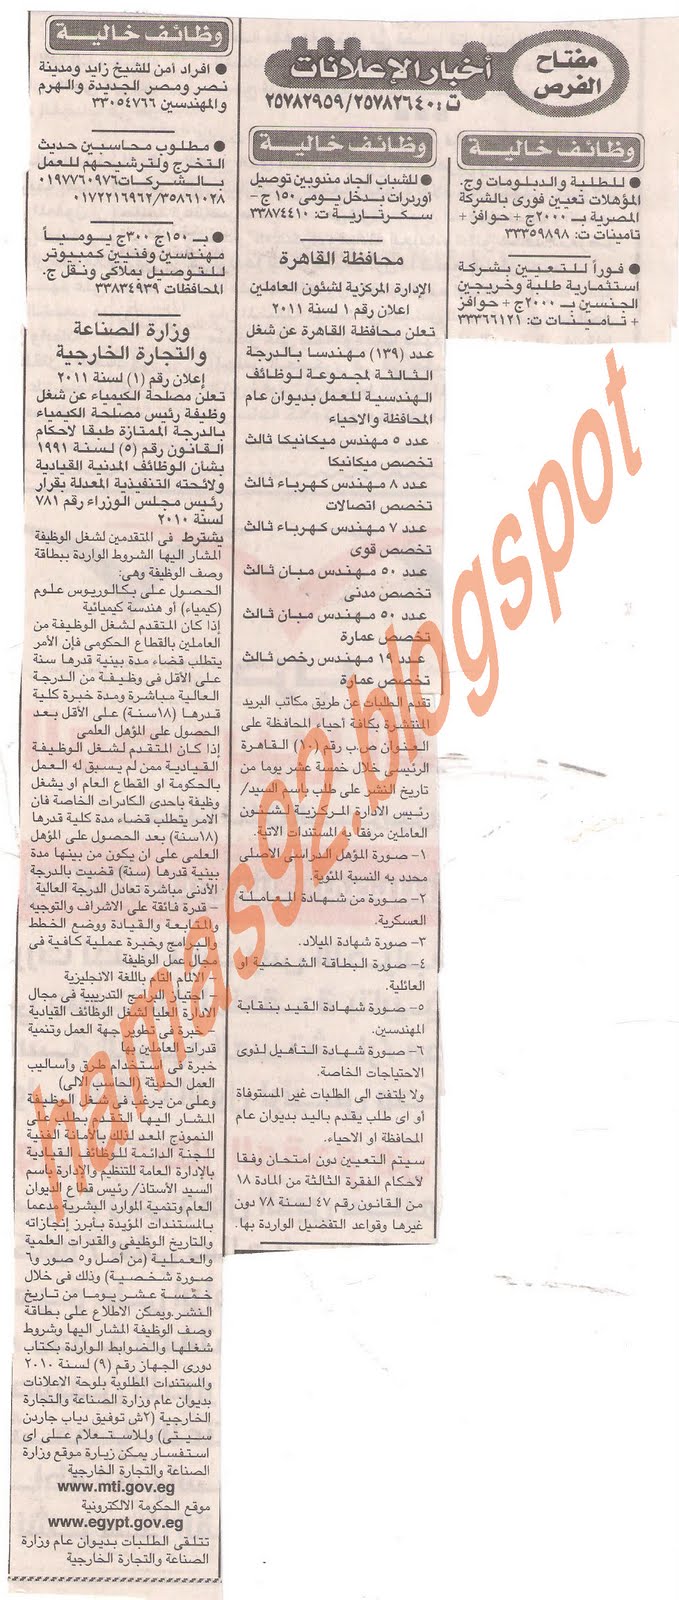 وظائف خالية من جريدة الاخبار الاحد 10 يوليو 2011 Picture+001